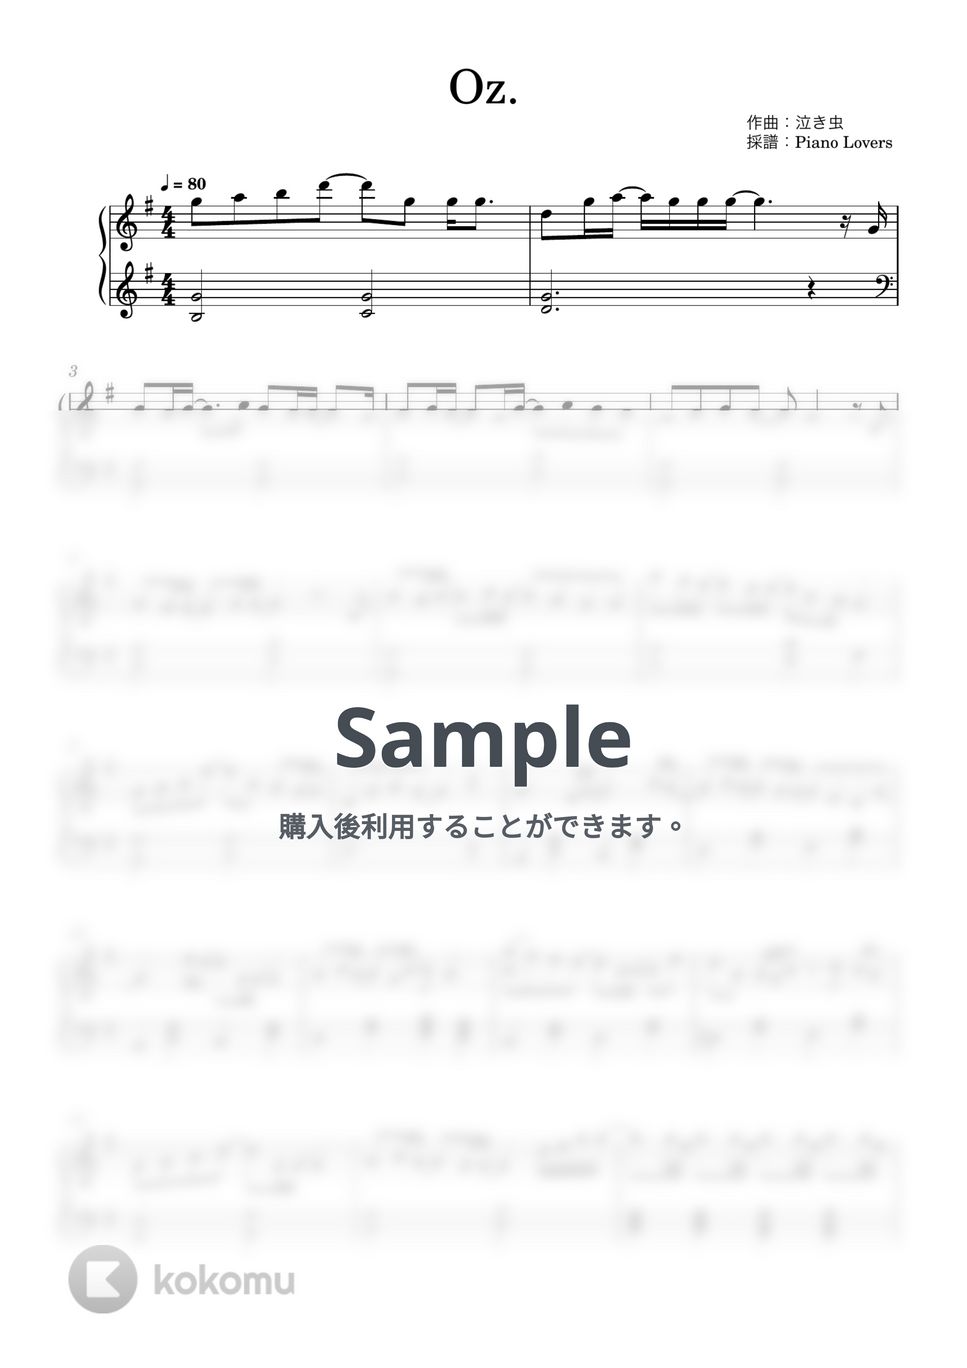 yama - Oz. (王様ランキング / ピアノ楽譜 / 初級) by Piano Lovers. jp